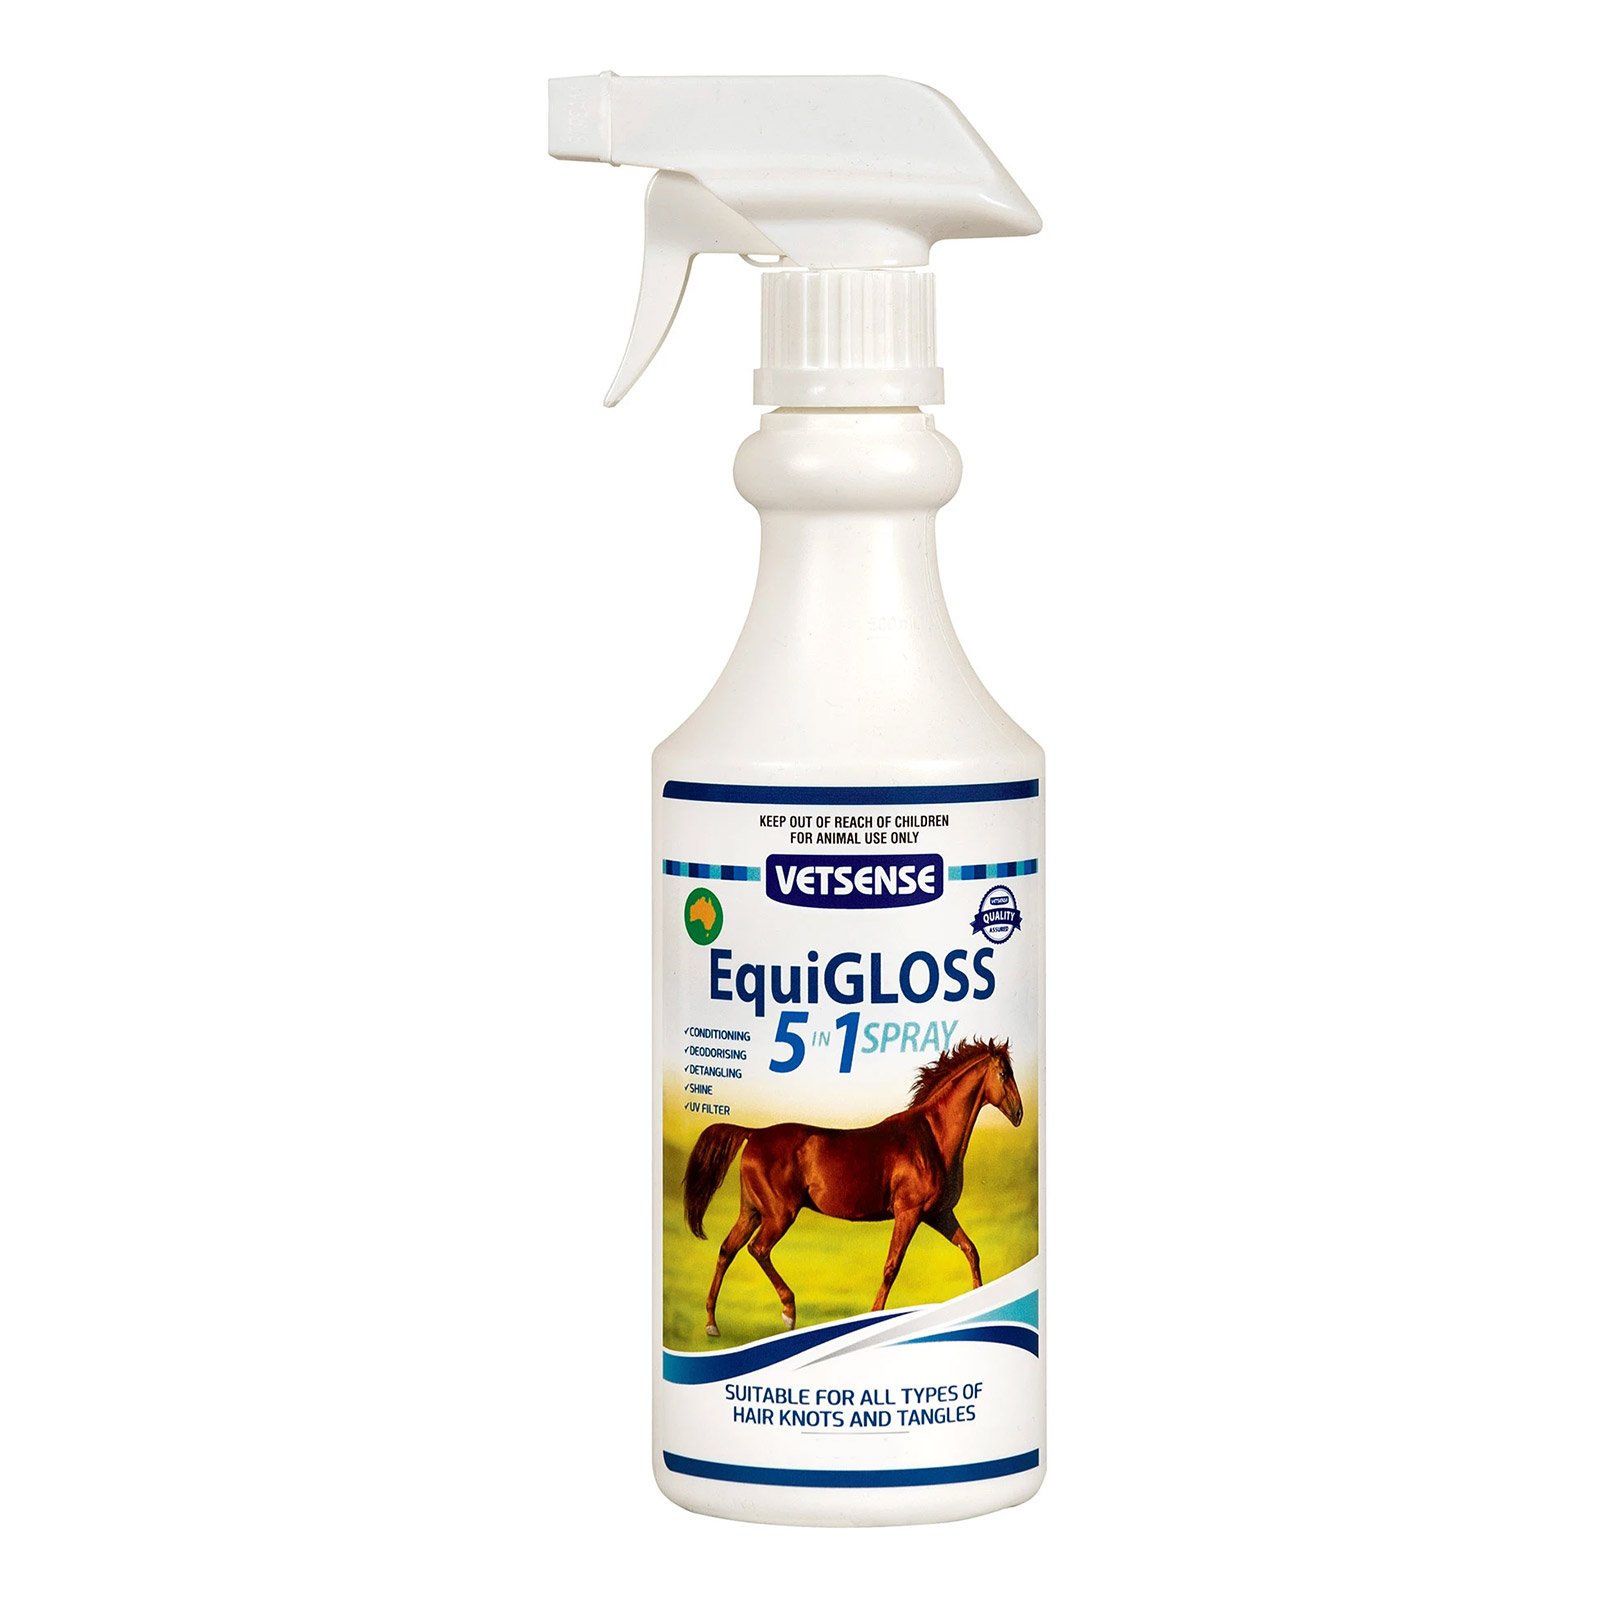 Vetsense Equigloss 5-in-1 Spray for Horses